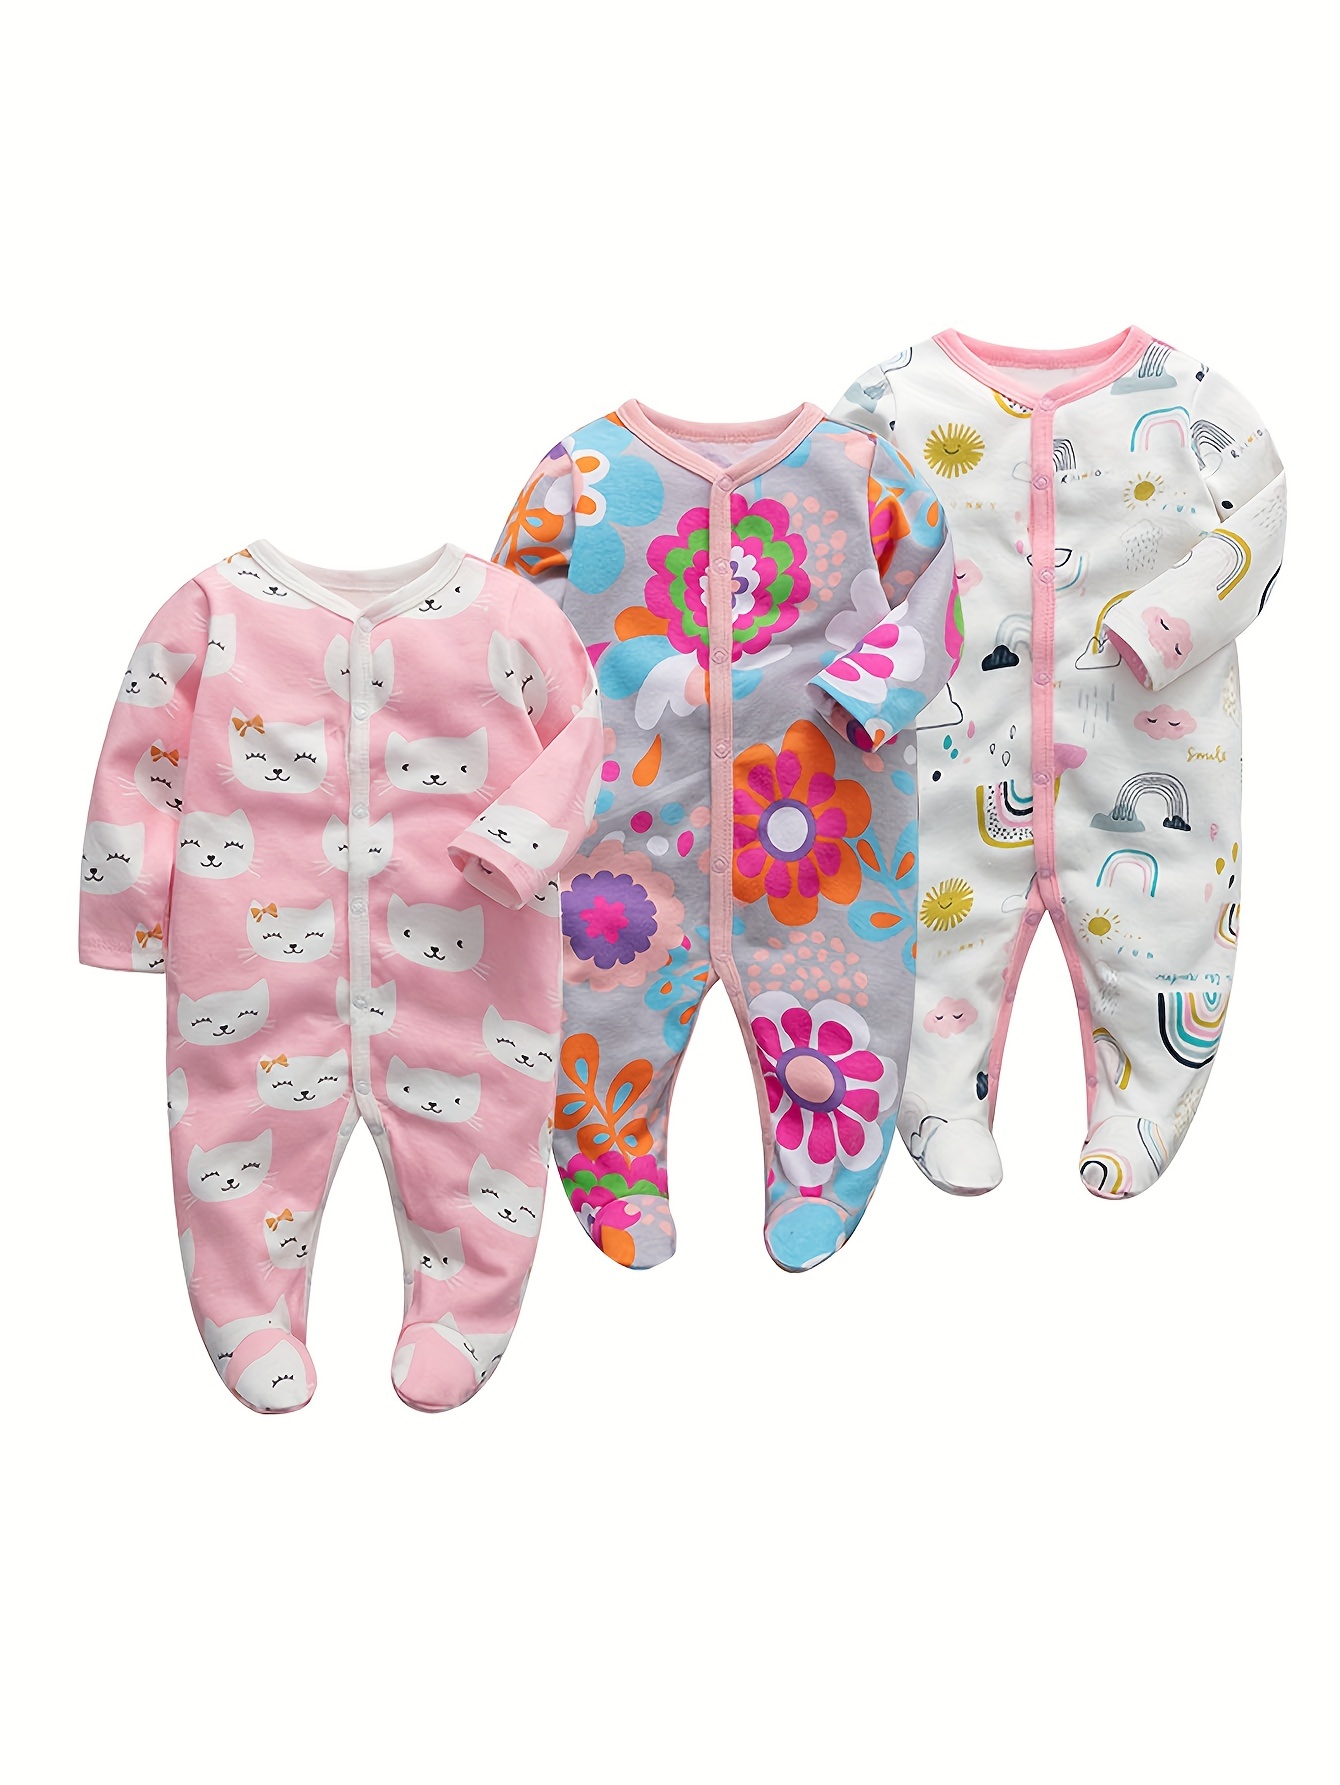 Comprar pijamas para bebé niño y niña (0-3 años)